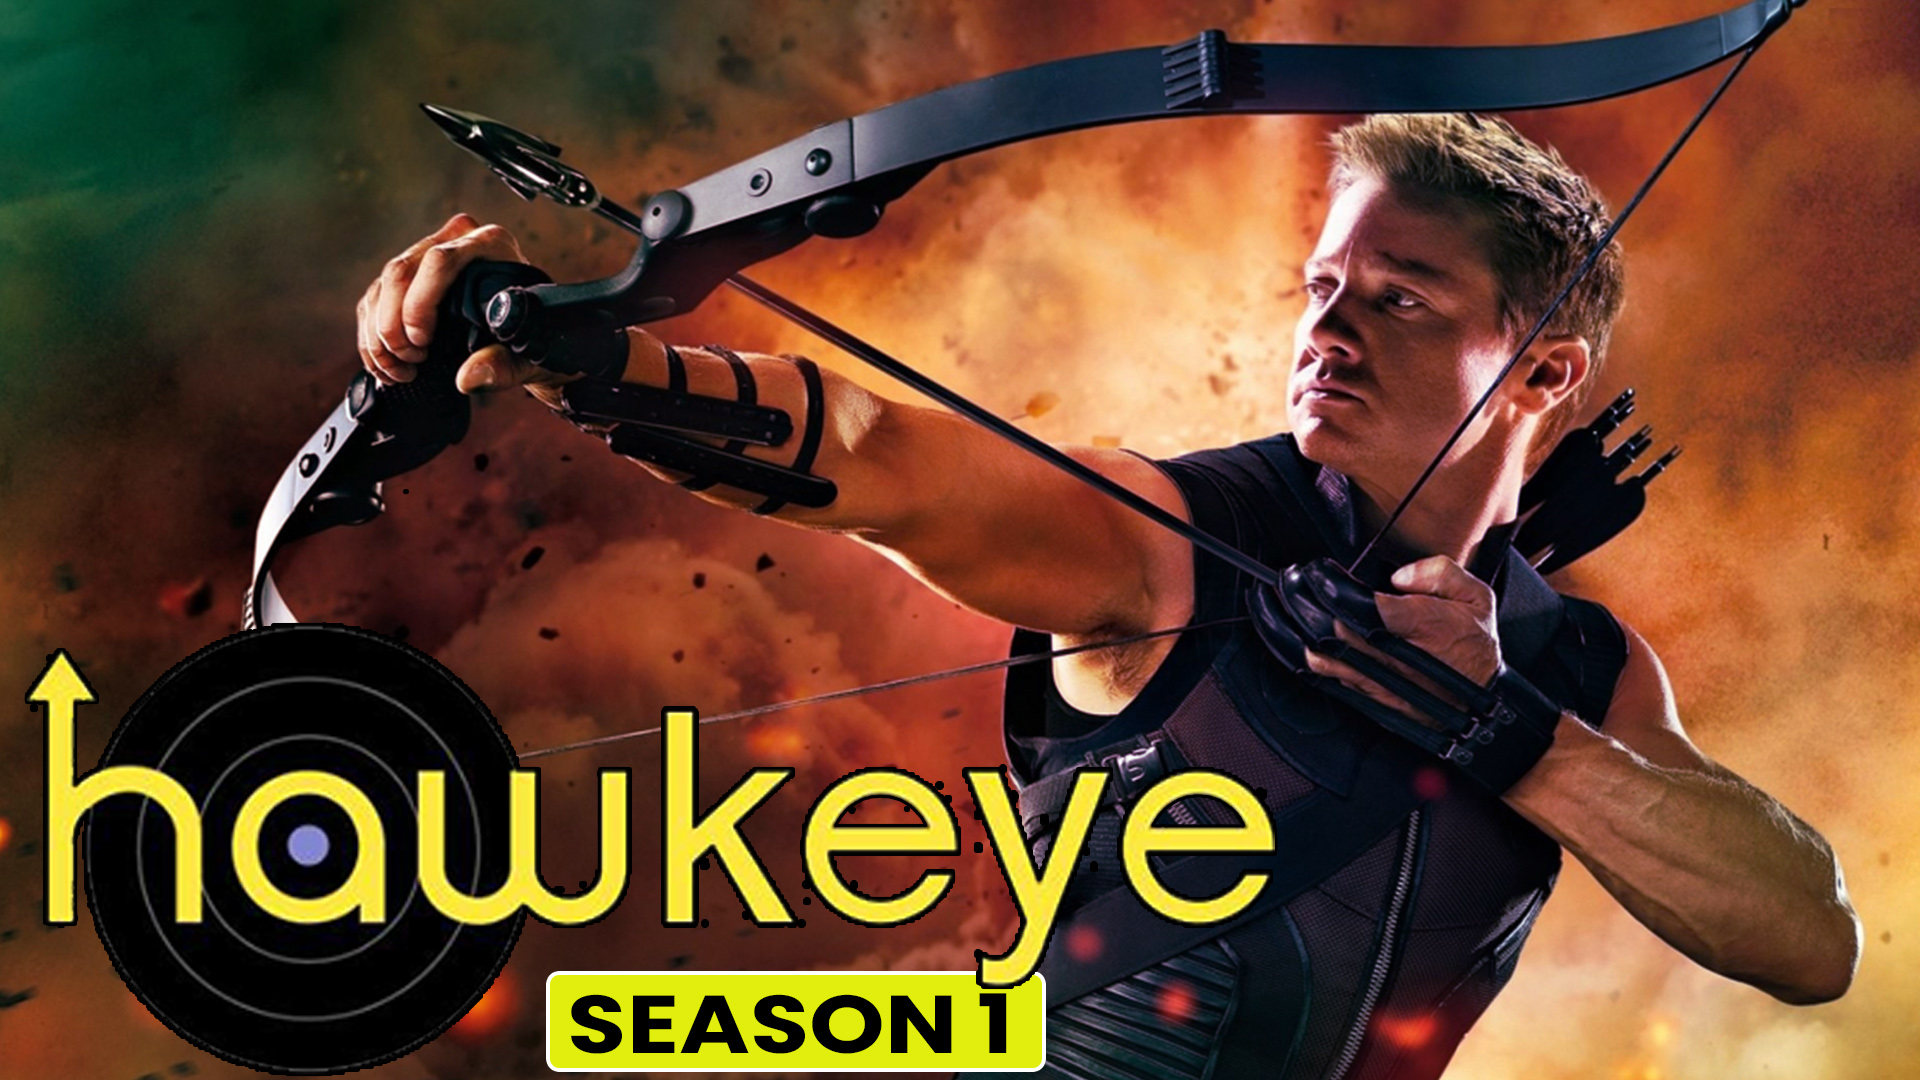 Hawkeye season 1